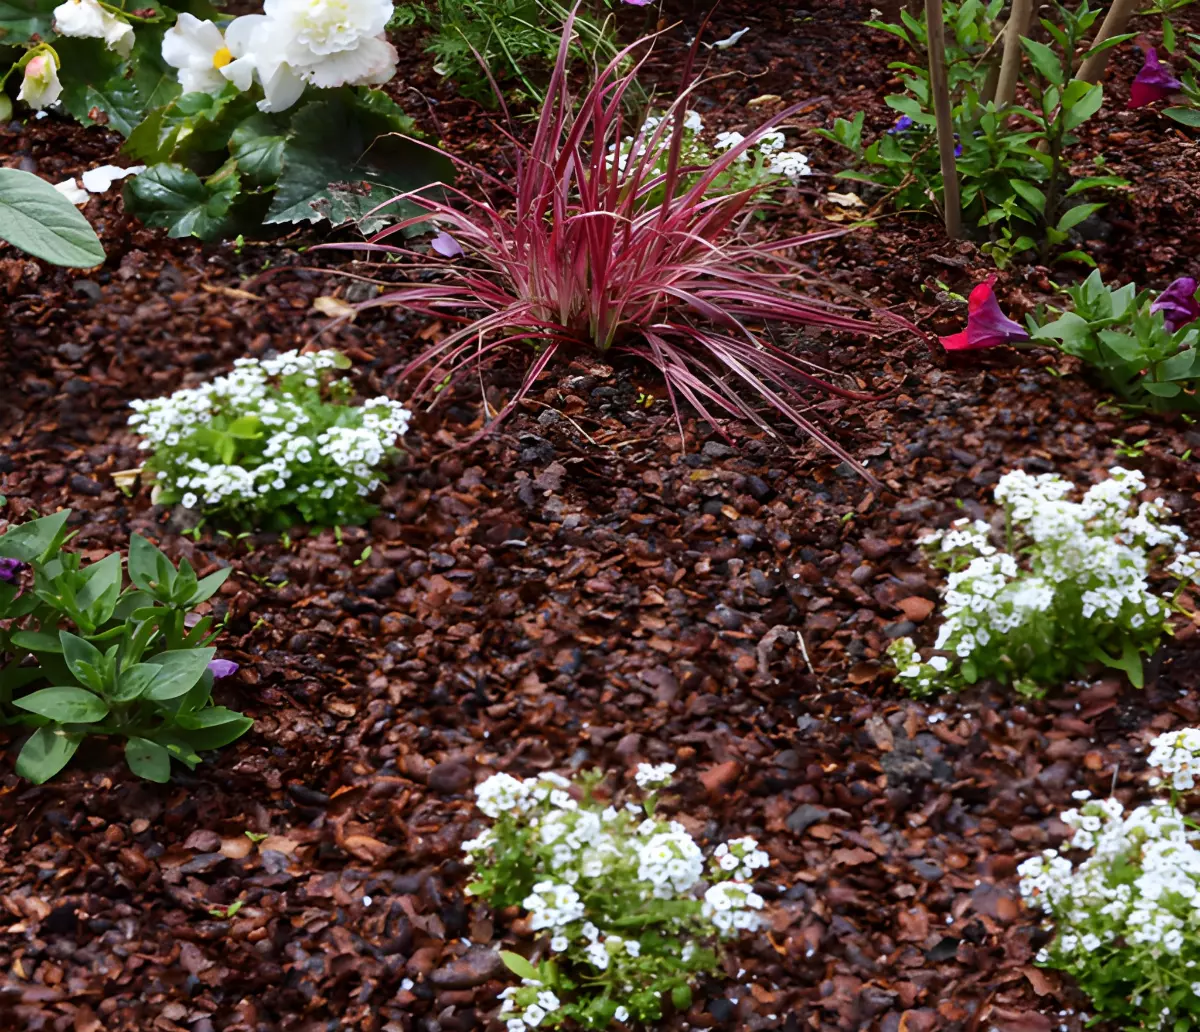 paillage de coques de cacao dans un jardin avec differentes especes de plantes vertes et avec des fleurs blanches